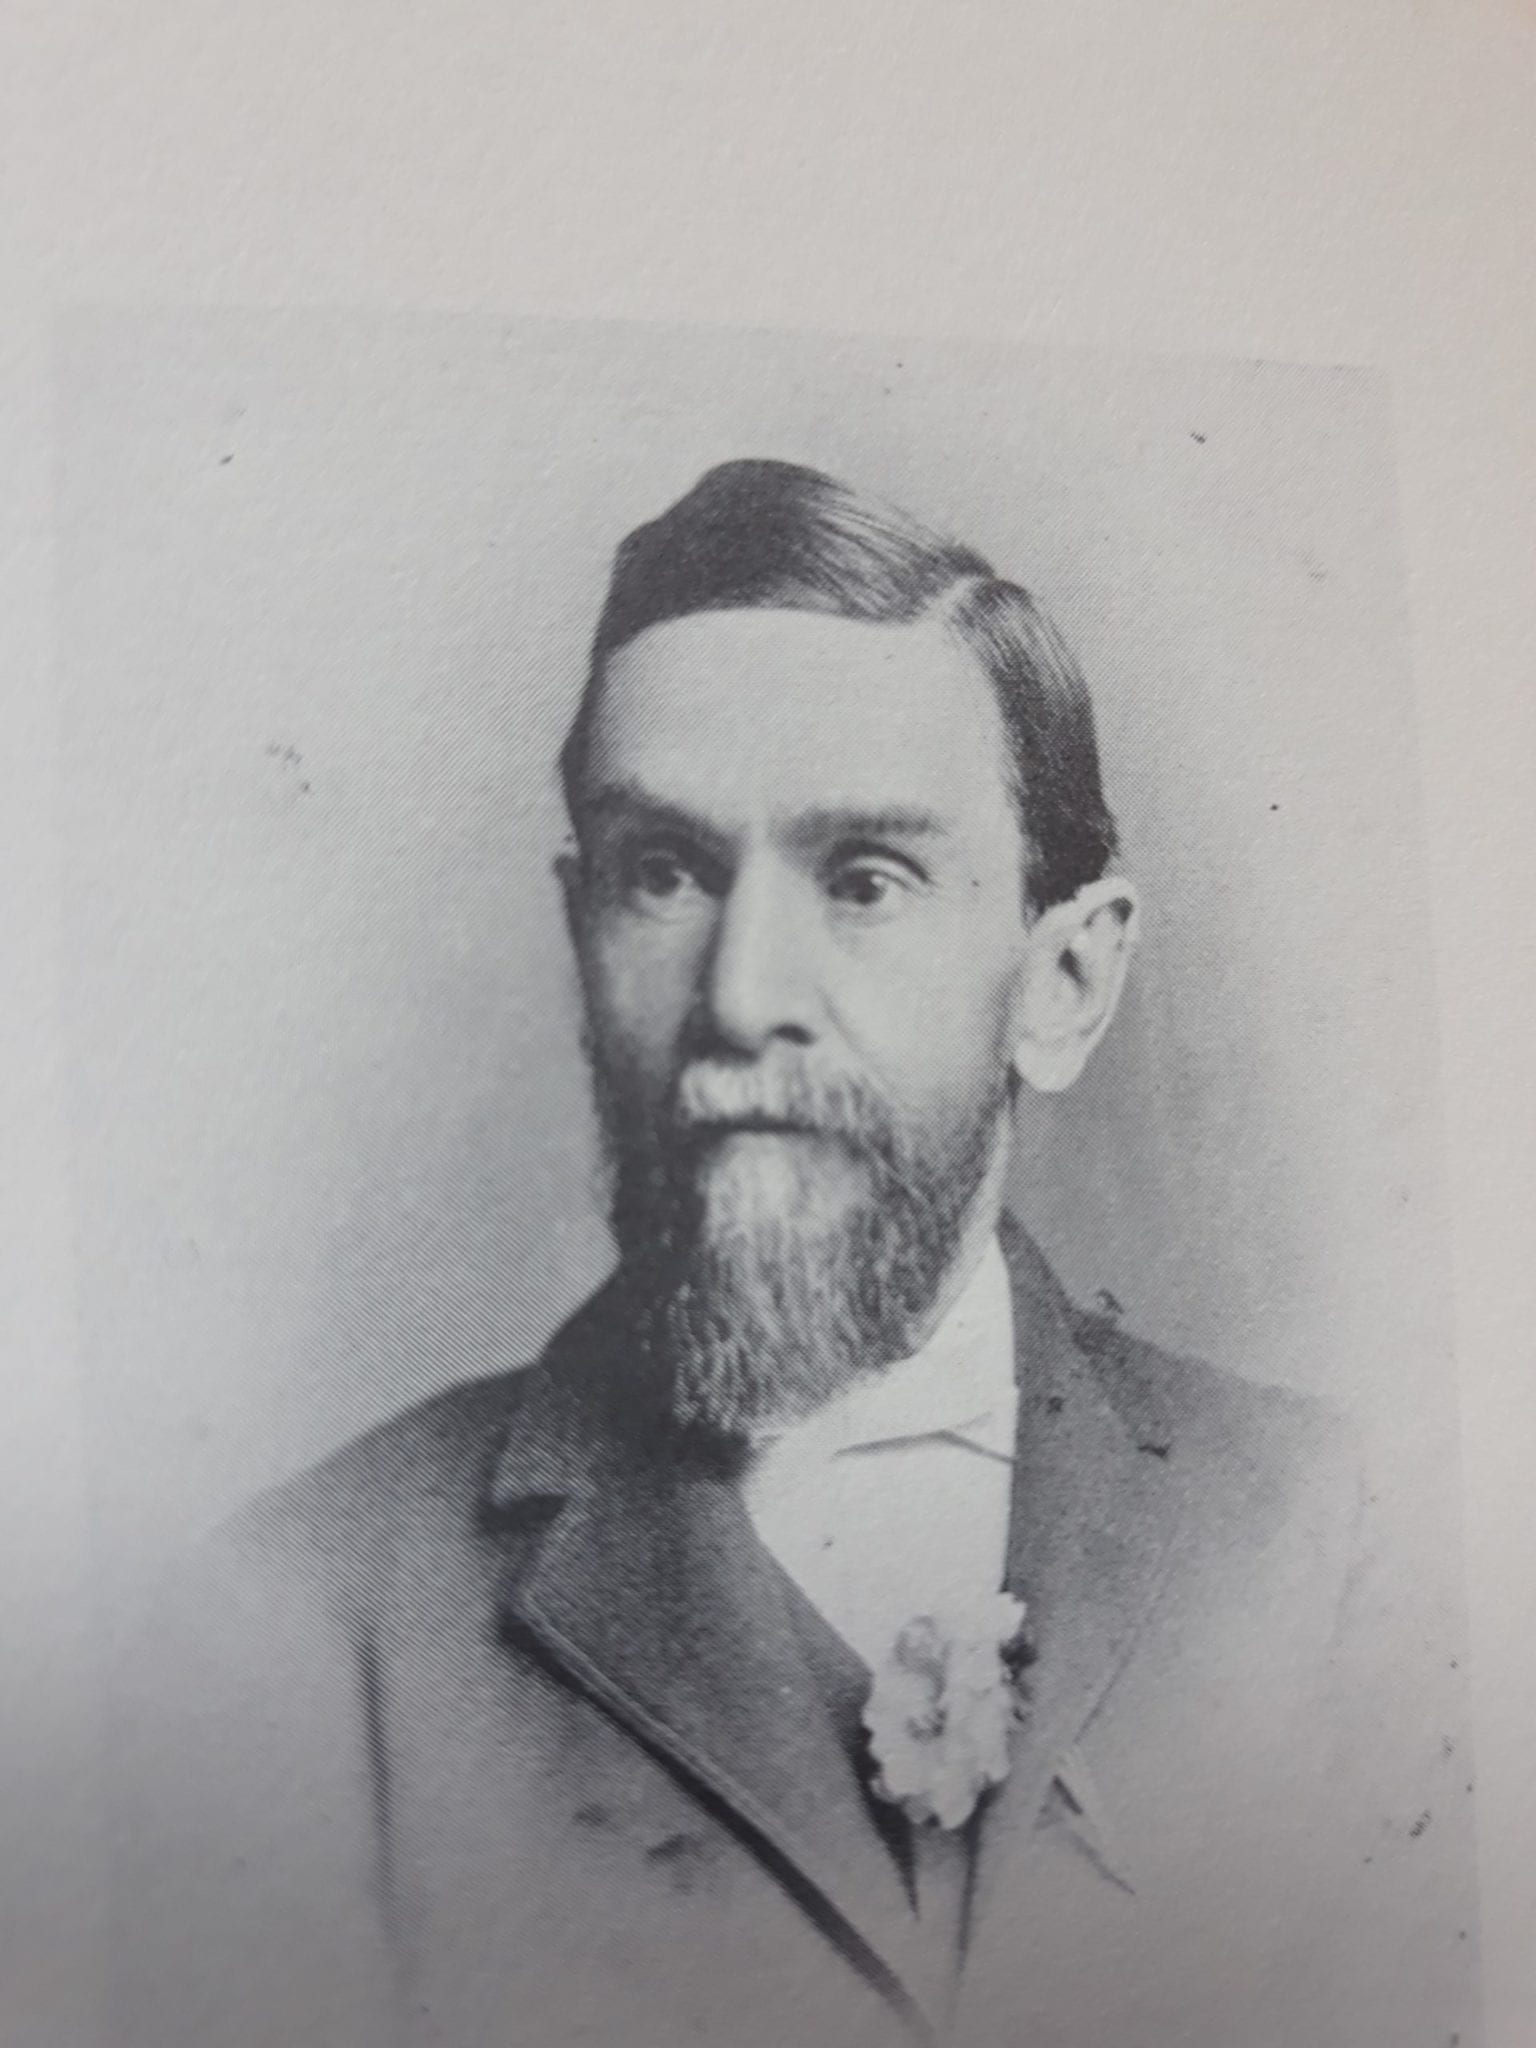 T.C. Williams of Richmond, Virginia